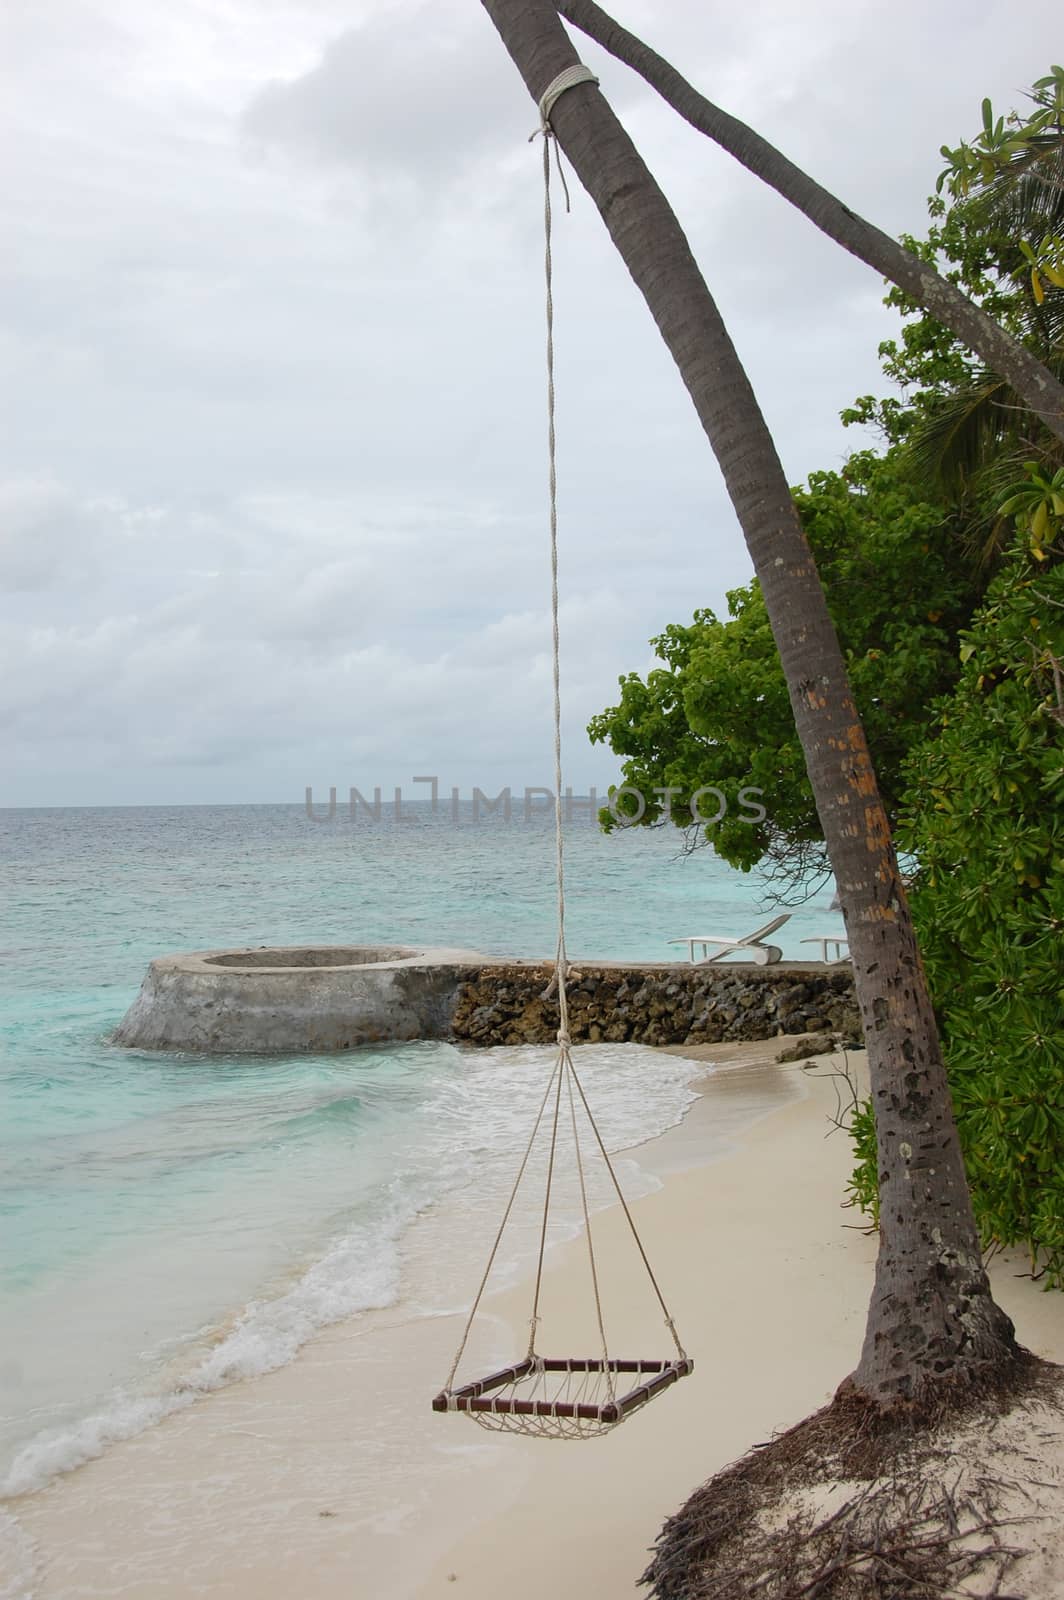 Hammock on rope at ocean beach by danemo